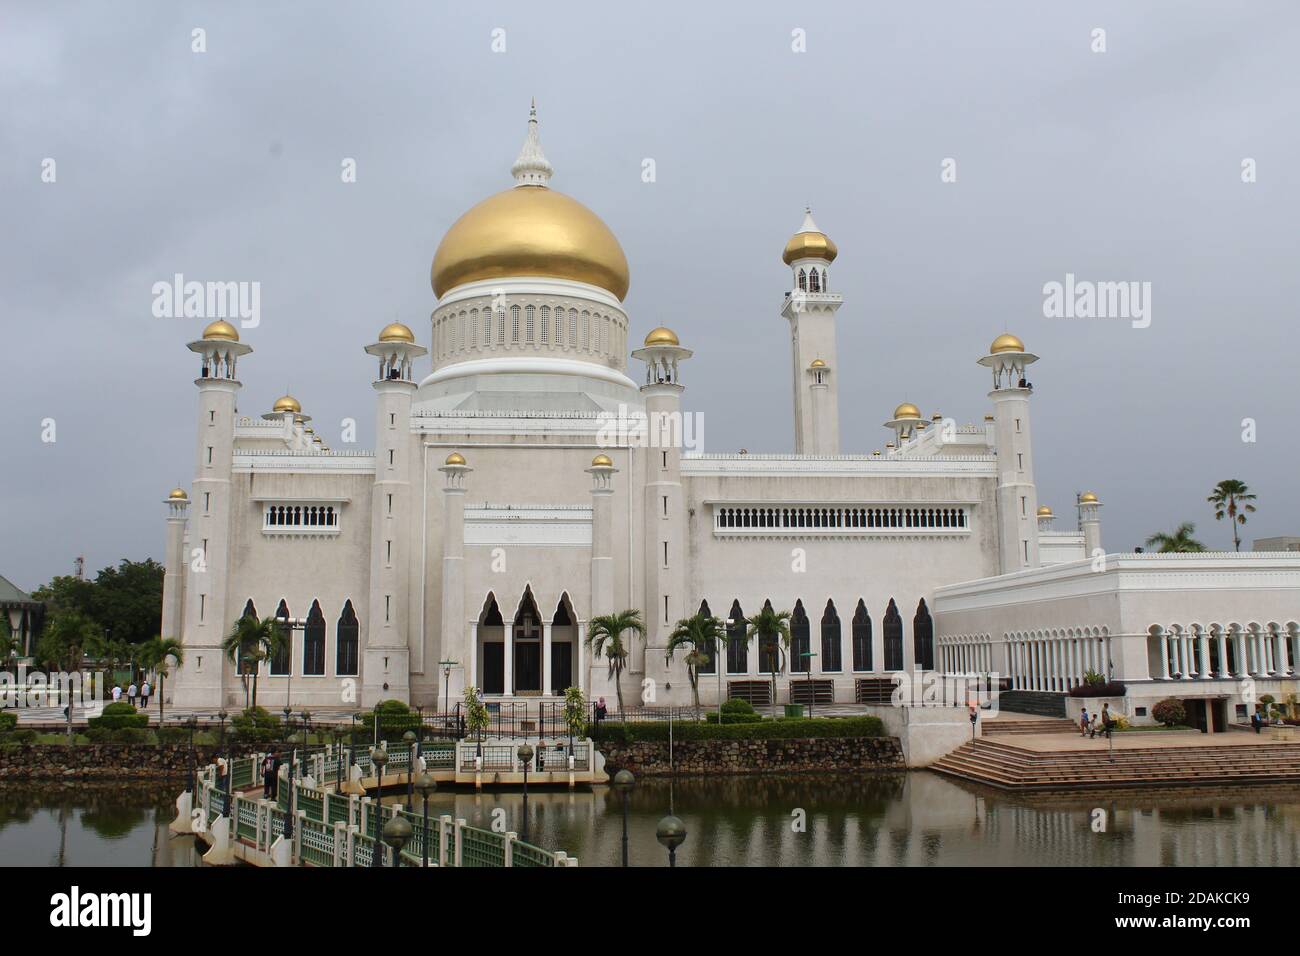 Moschea del Sultano Omar Ali Saifuddin a Bandar seri Begawan, Brunei Darussalam sul Borneo. Foto Stock